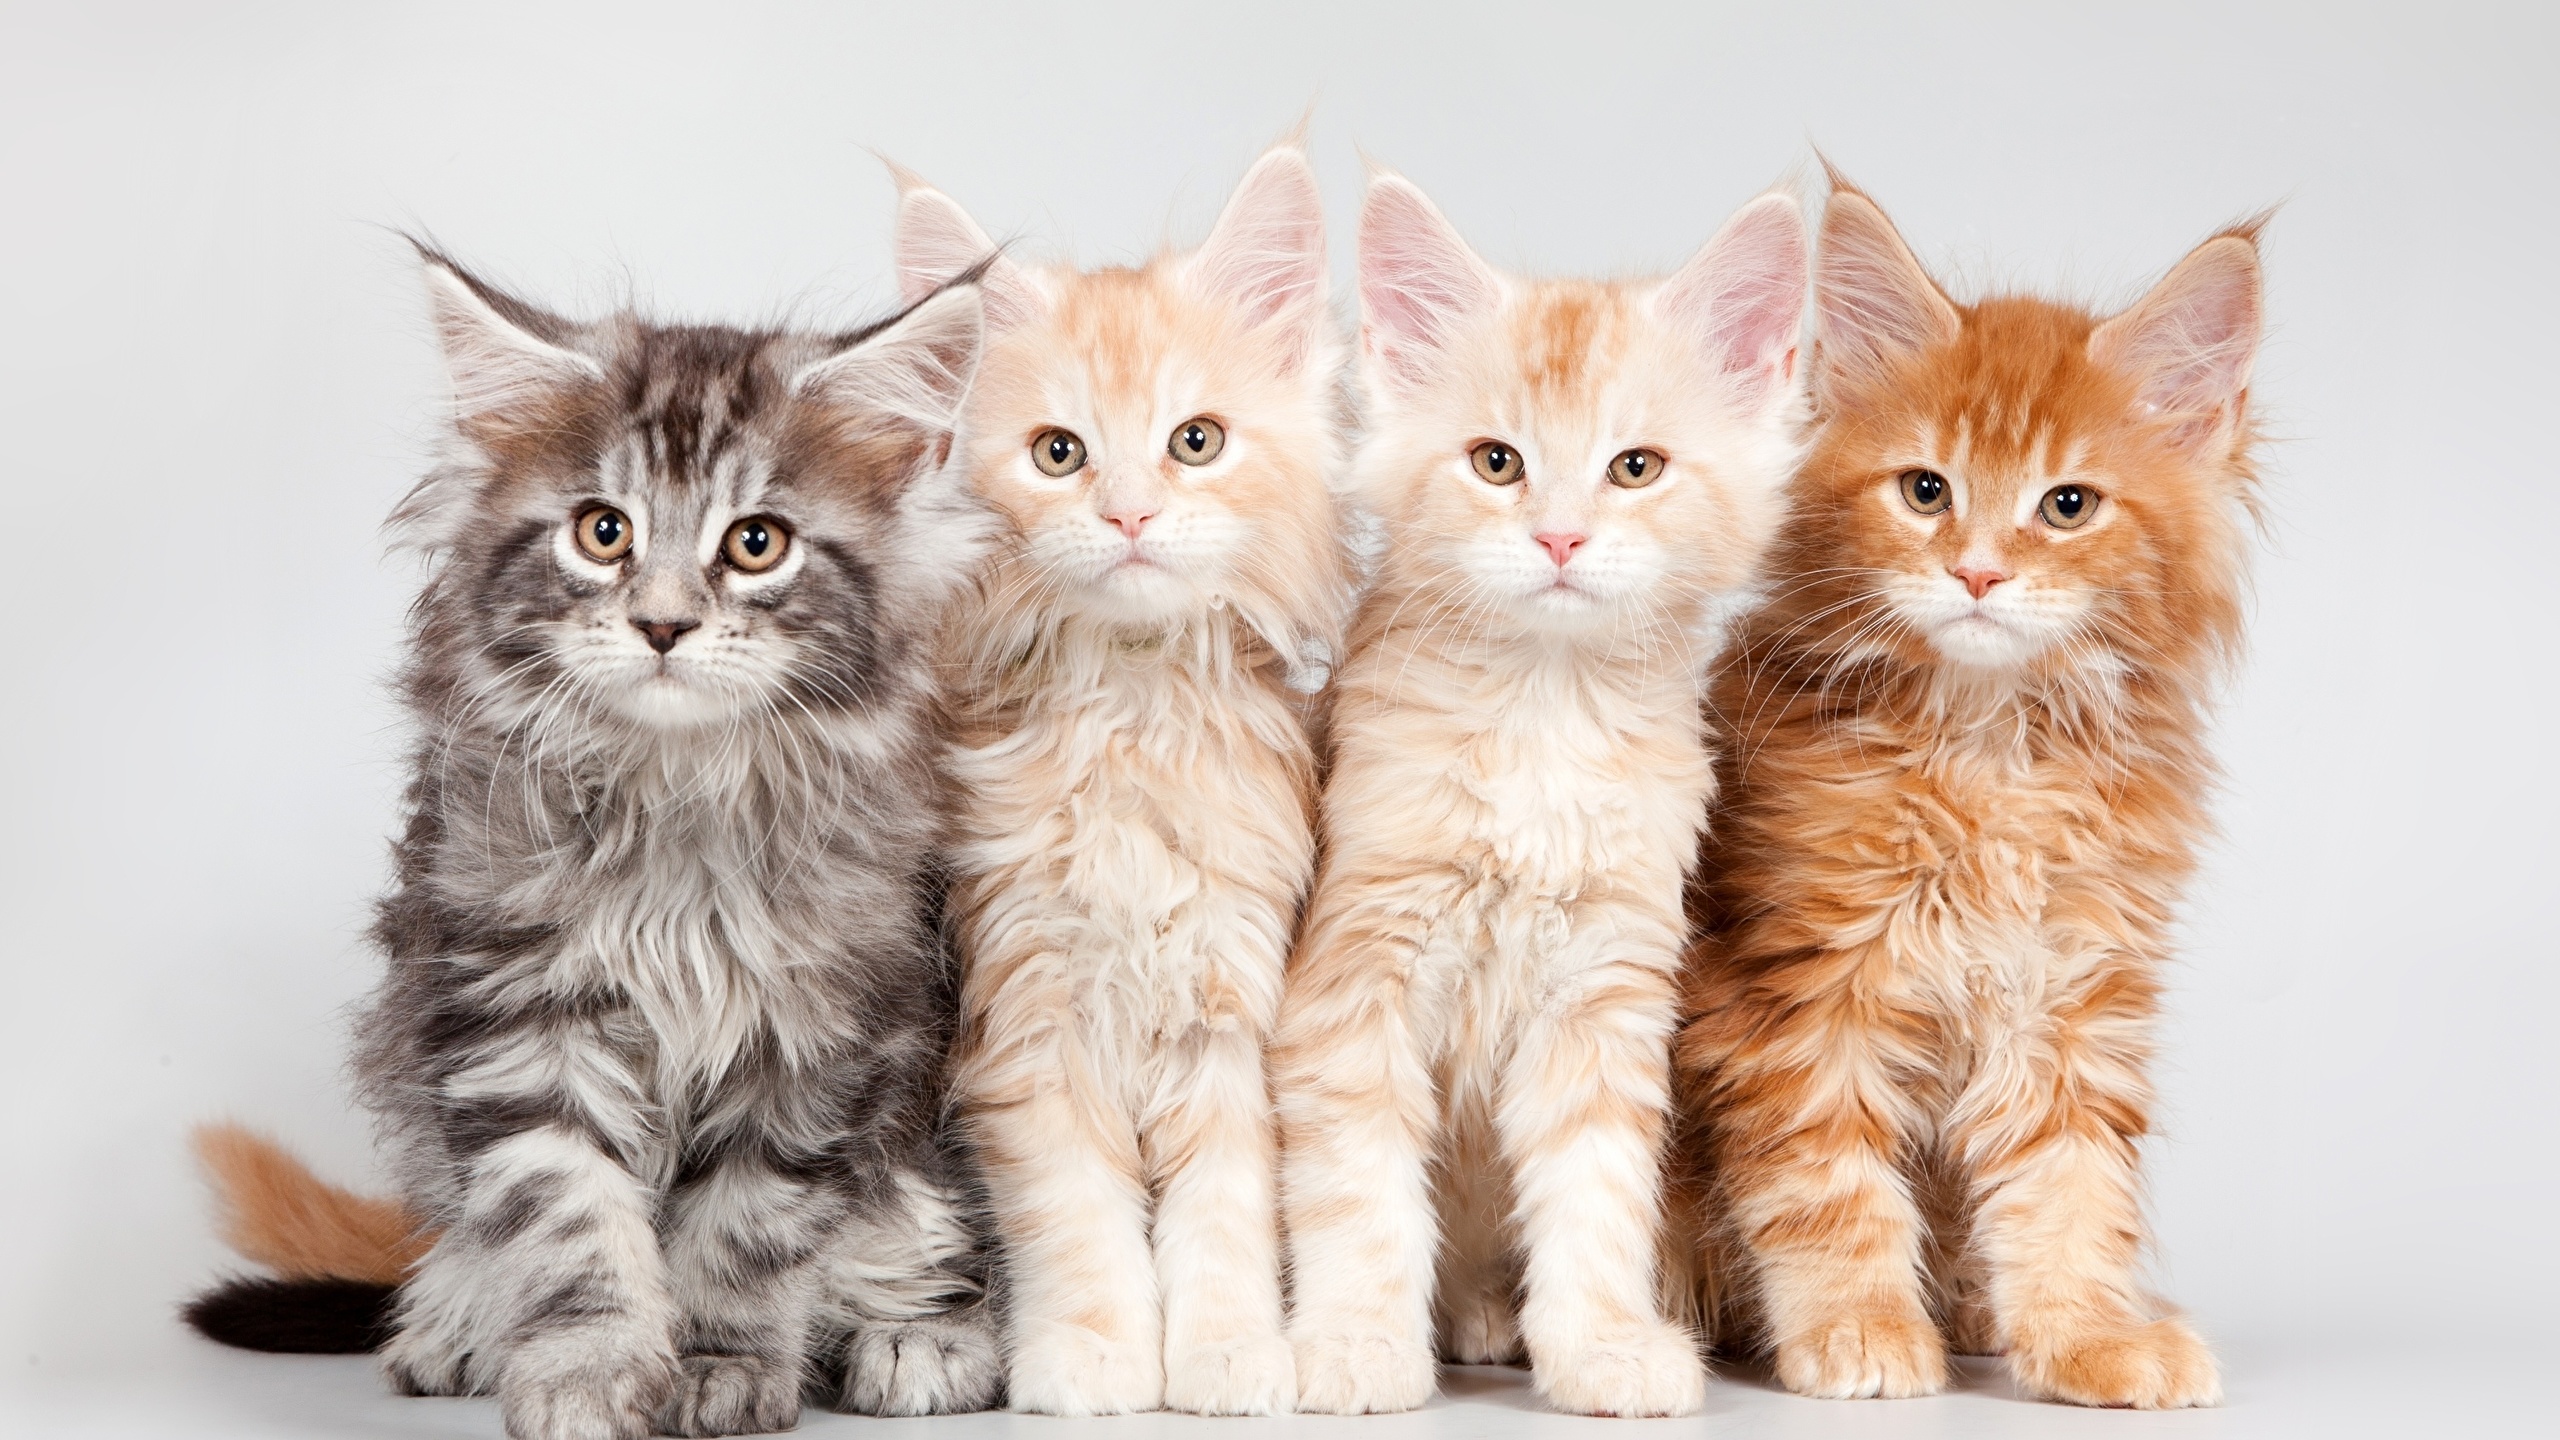 壁紙 2560x1440 飼い猫 メインクーン 子猫 ふわふわ オレンジ色動物 動物 ダウンロード 写真